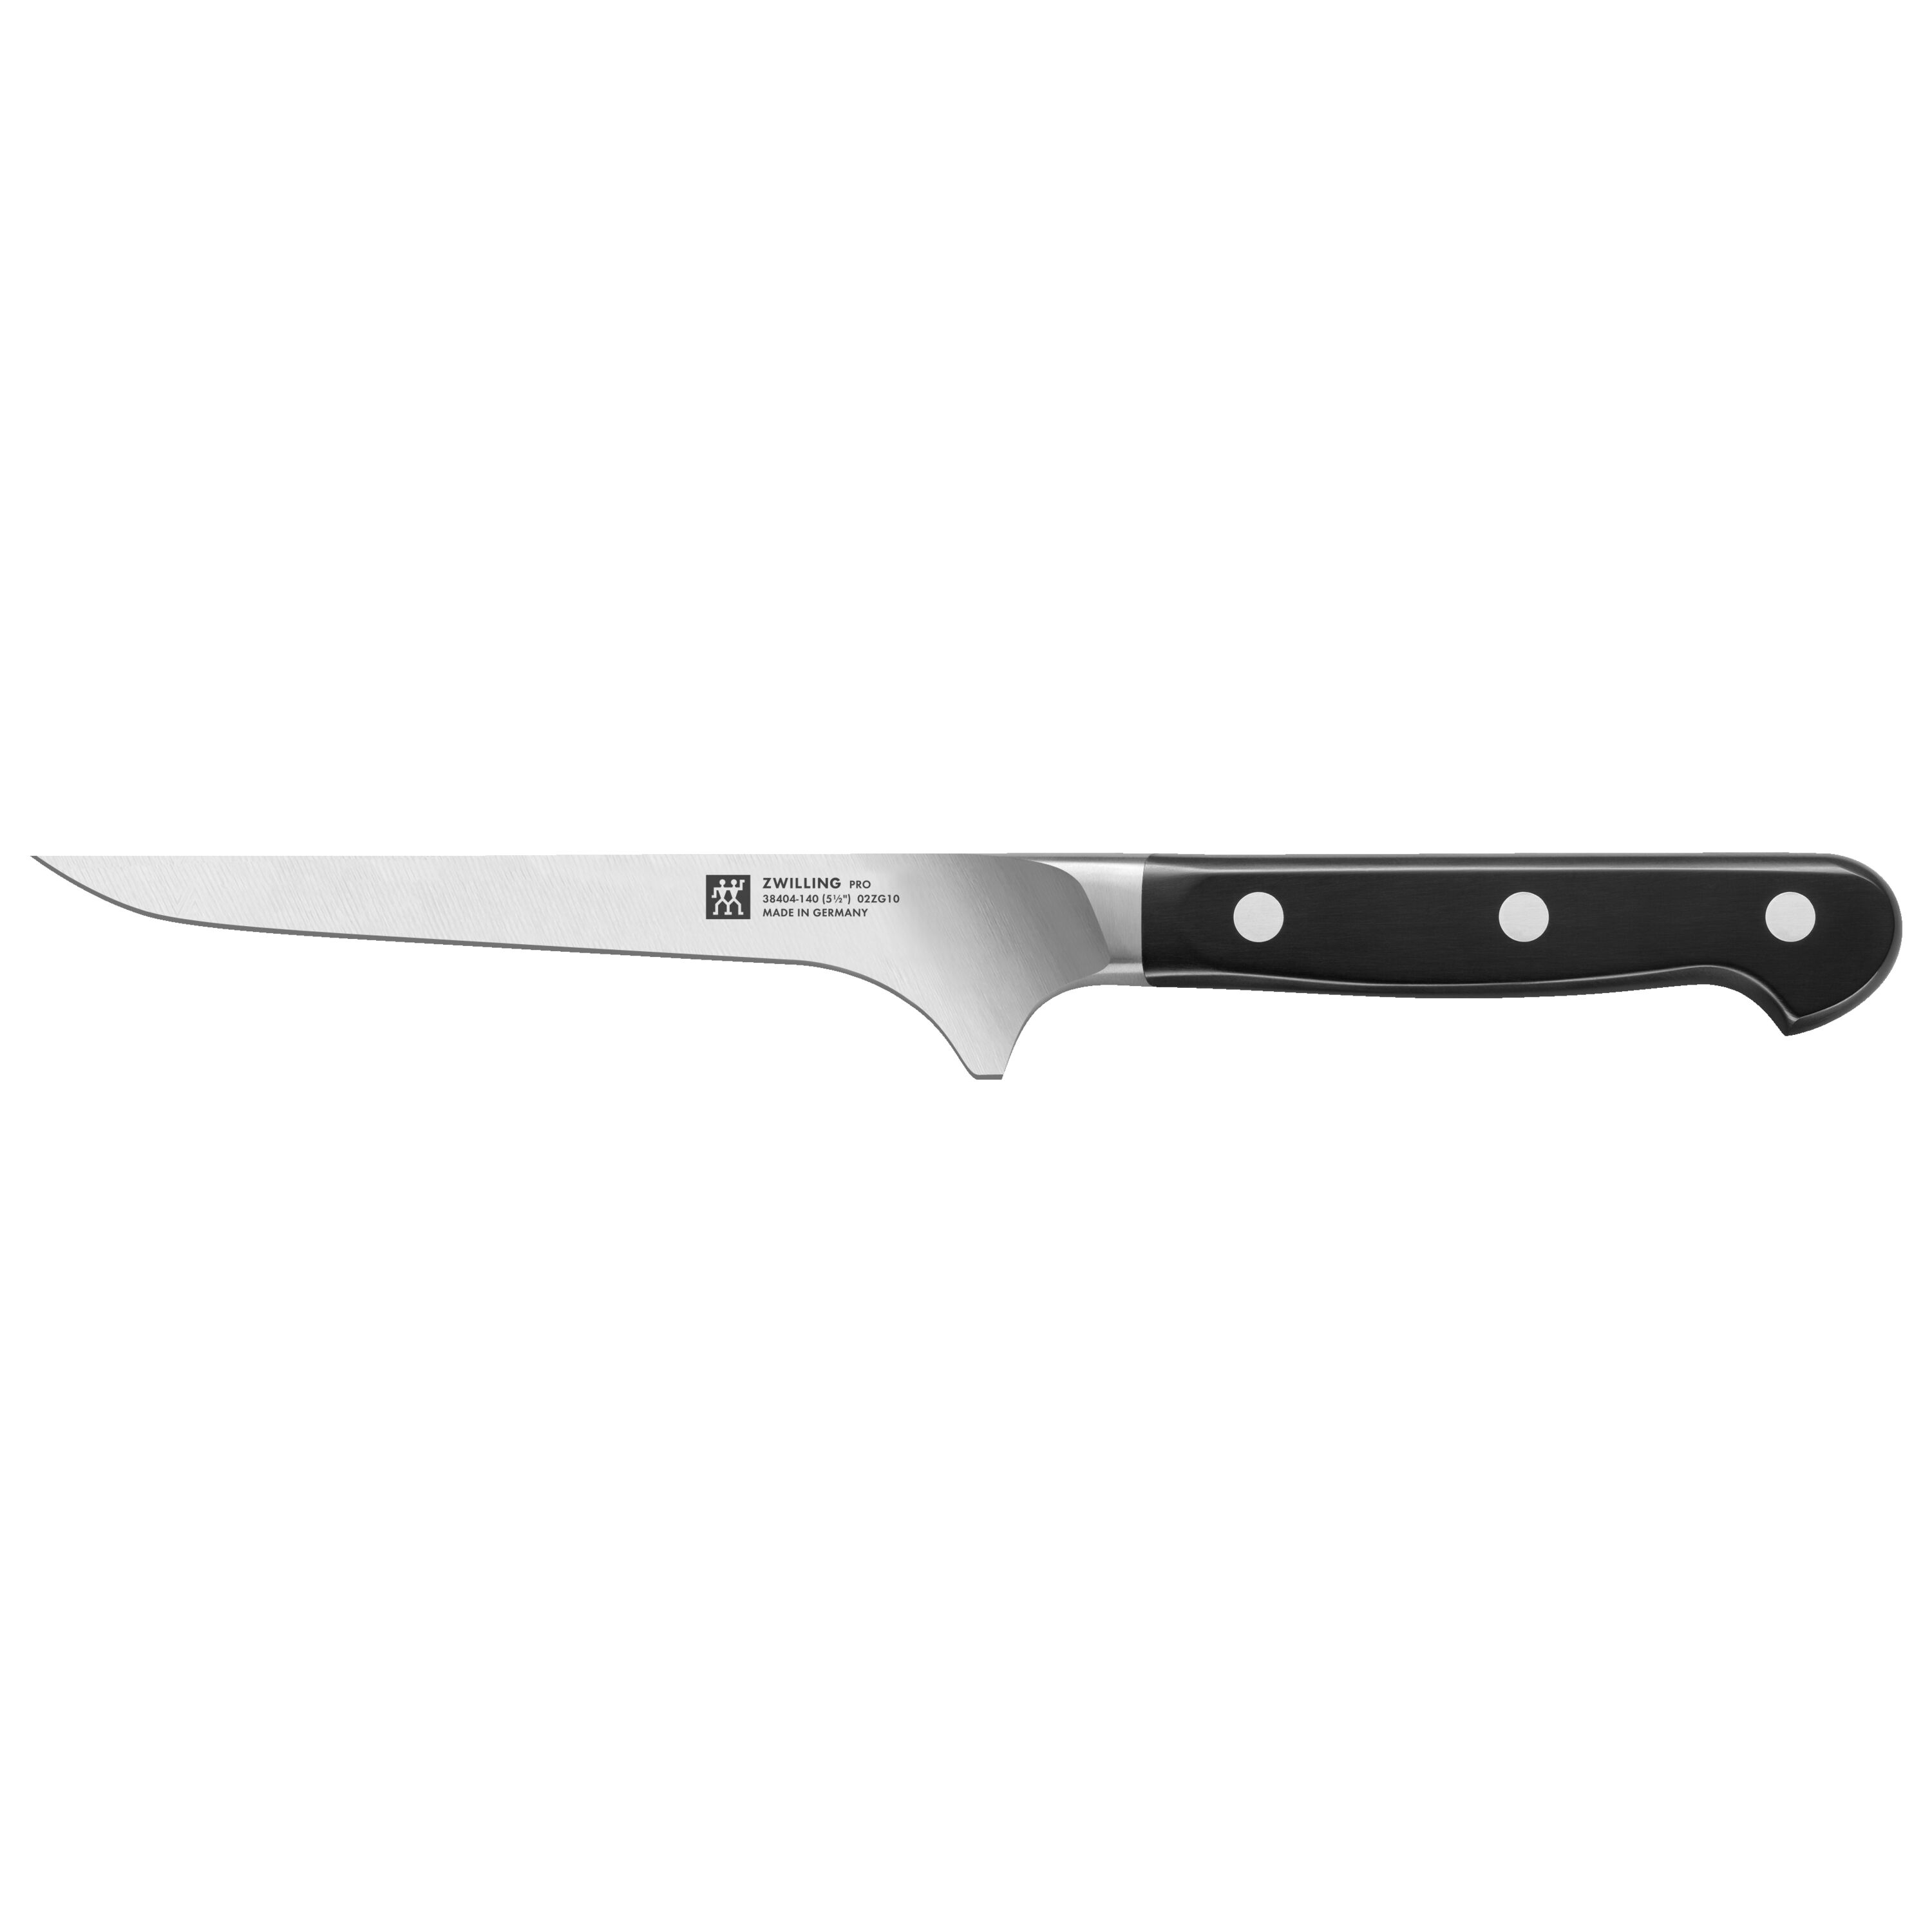 5.5 Boning Knife Fillet Knife Damascus Japanese Pro High Carbon